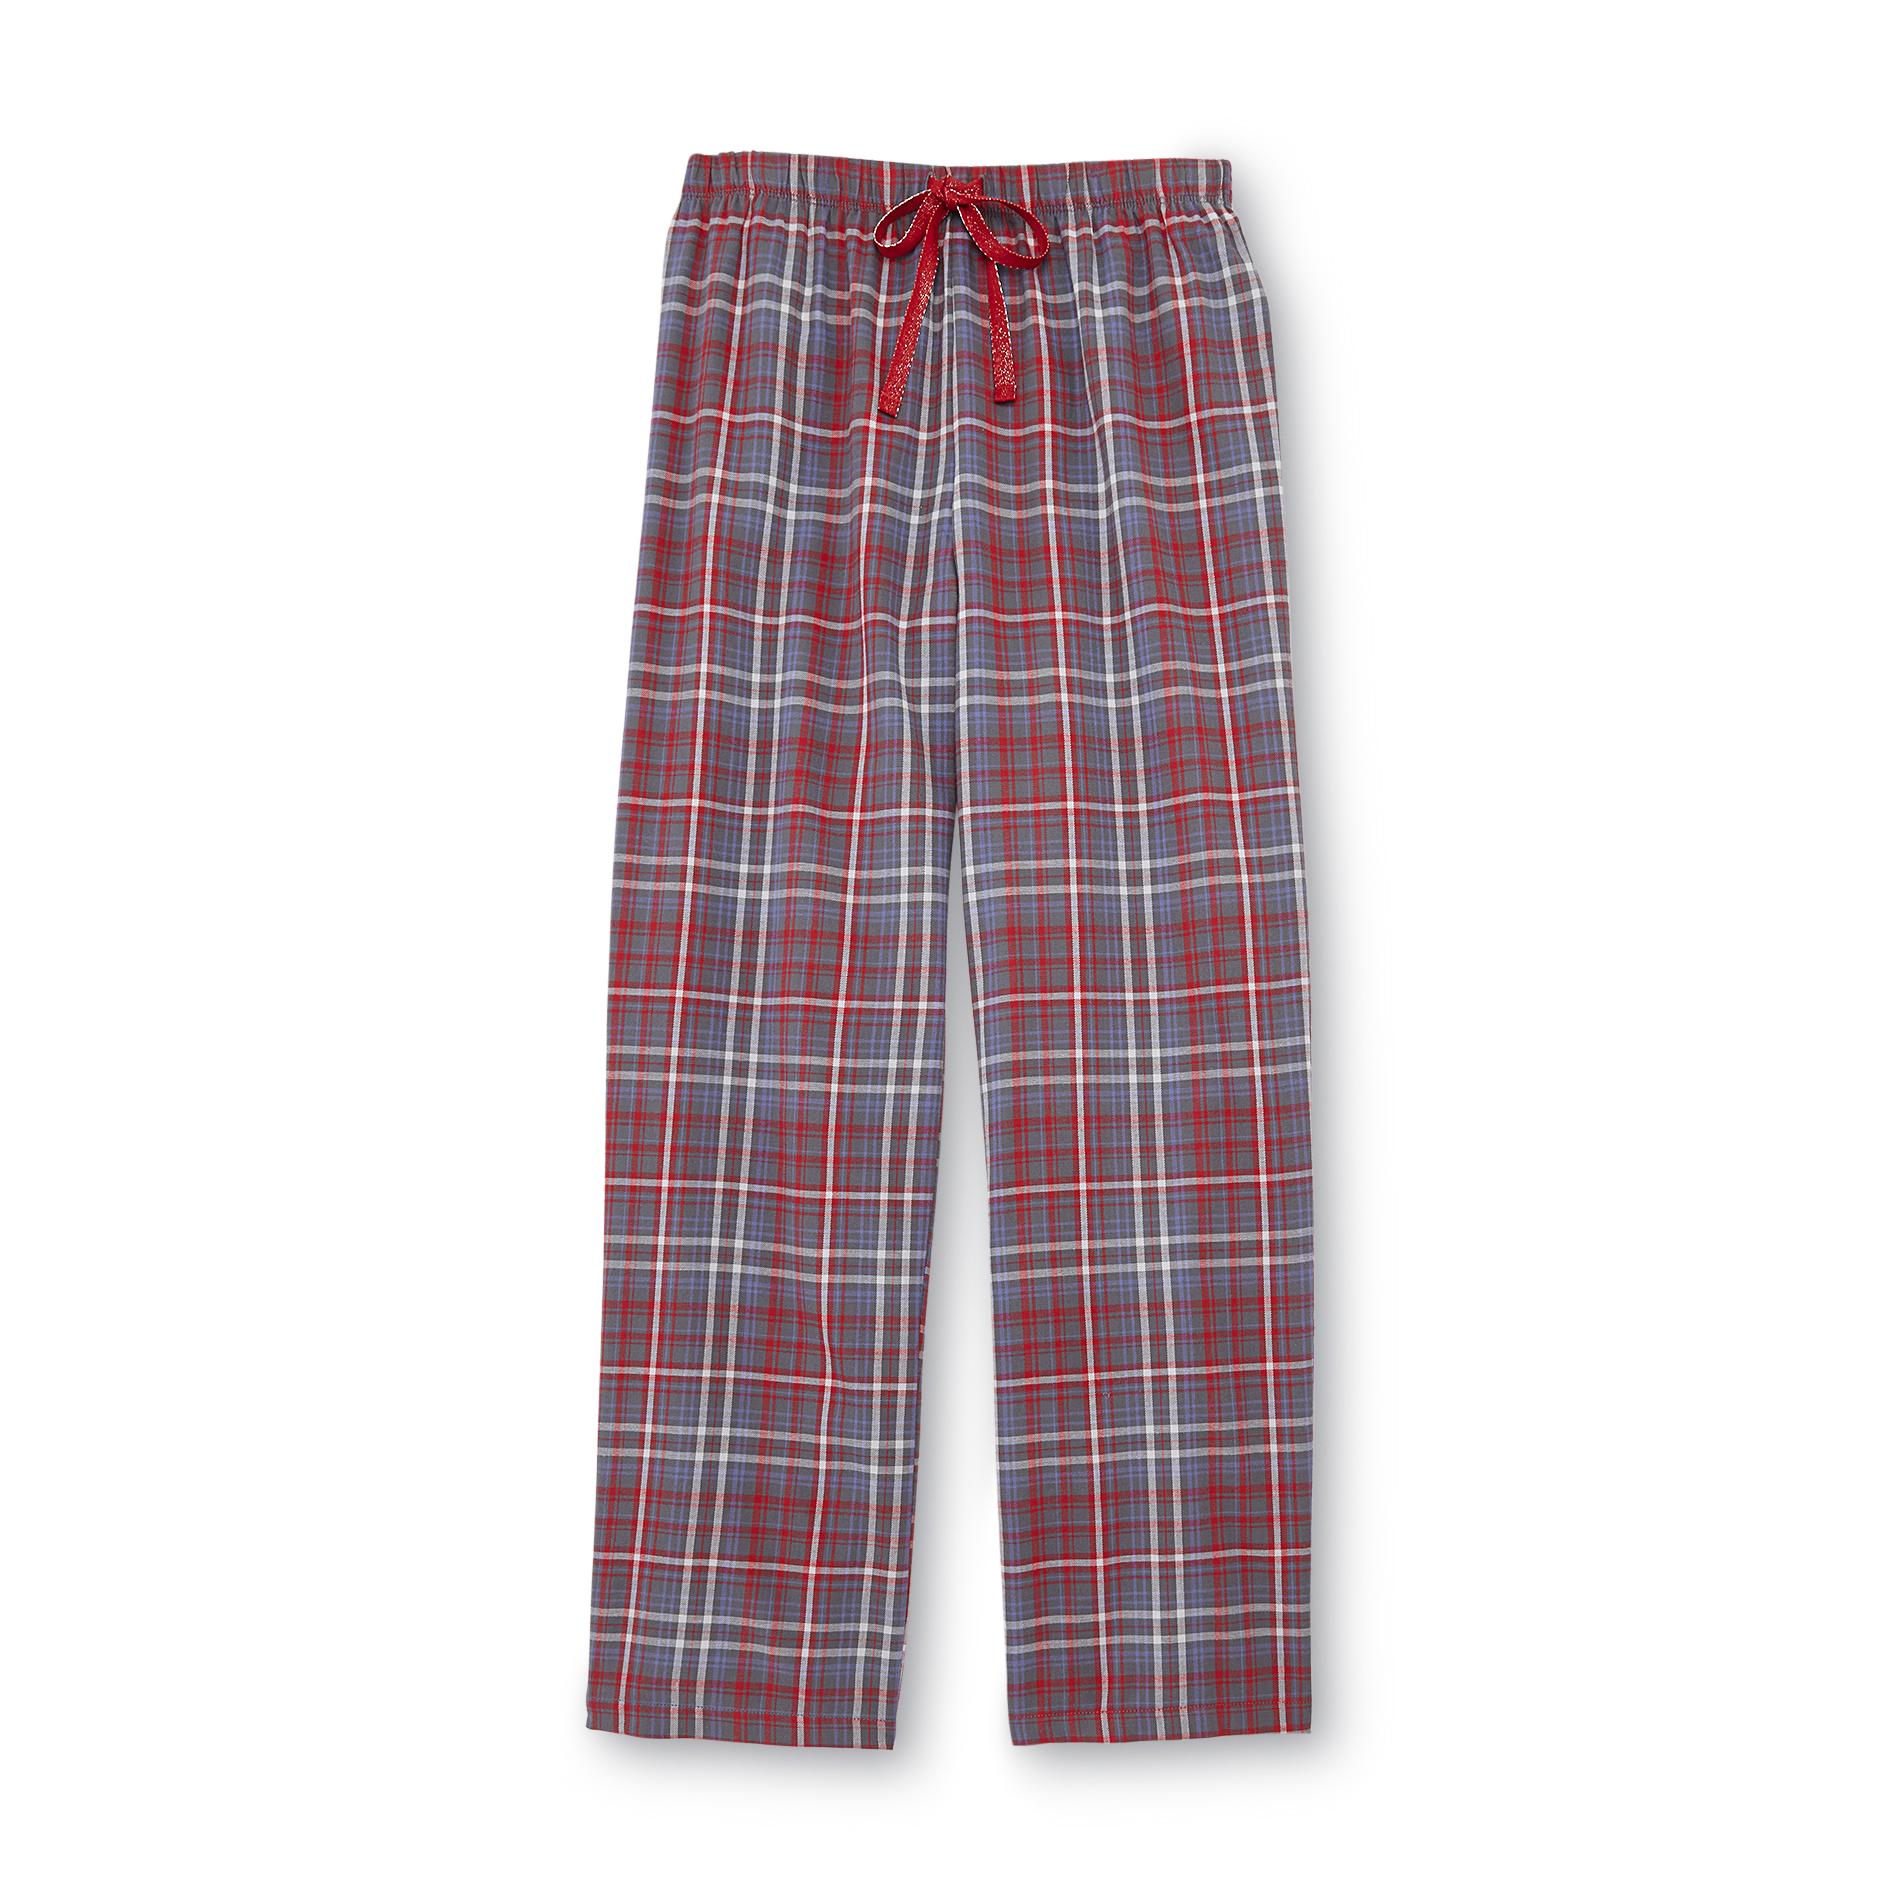 Covington Women's Plaid Flannel Pajama Pants